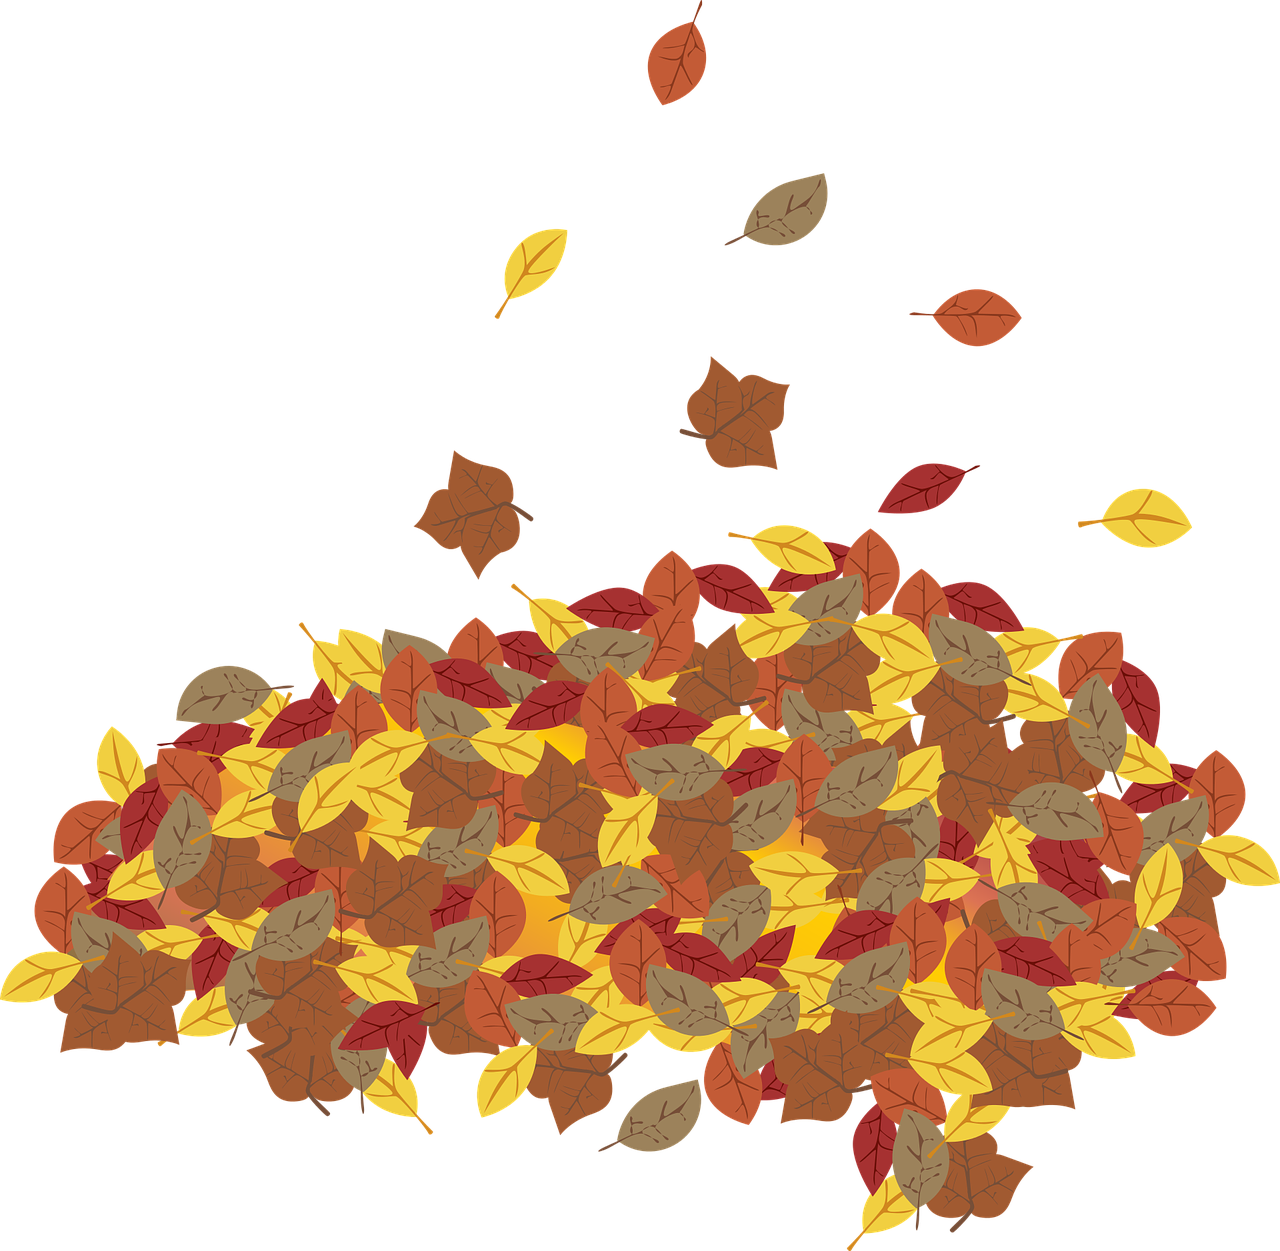 I disegni delle foglie da colorare e ritagliare per i bambini